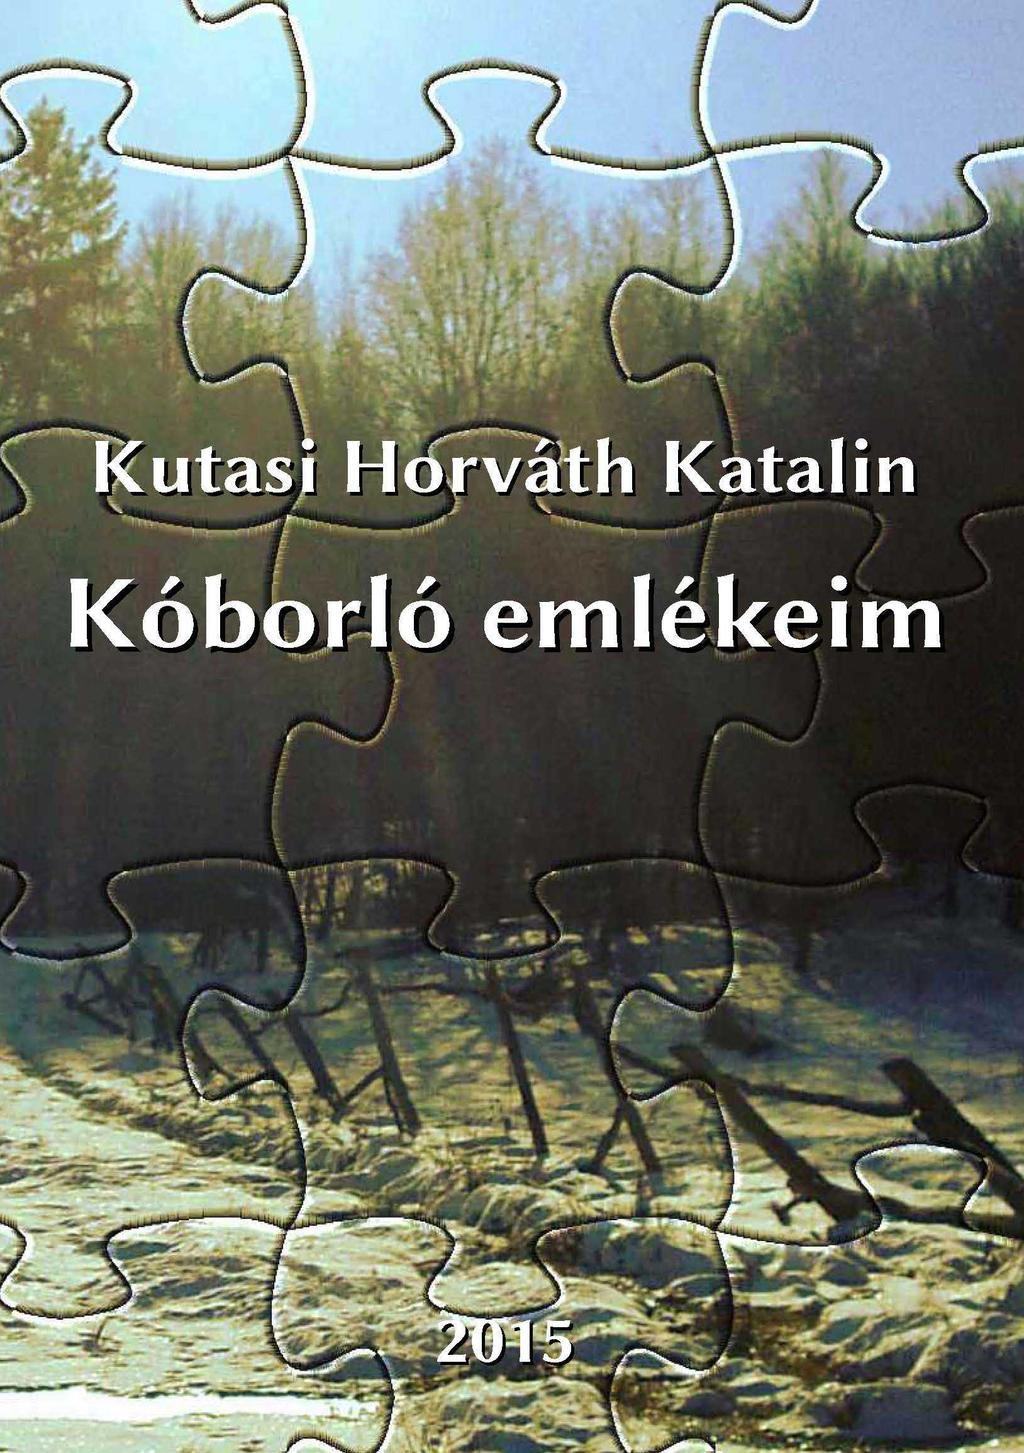 Kutasi Horváth Katalin Kóborló emlékeim - PDF Ingyenes letöltés